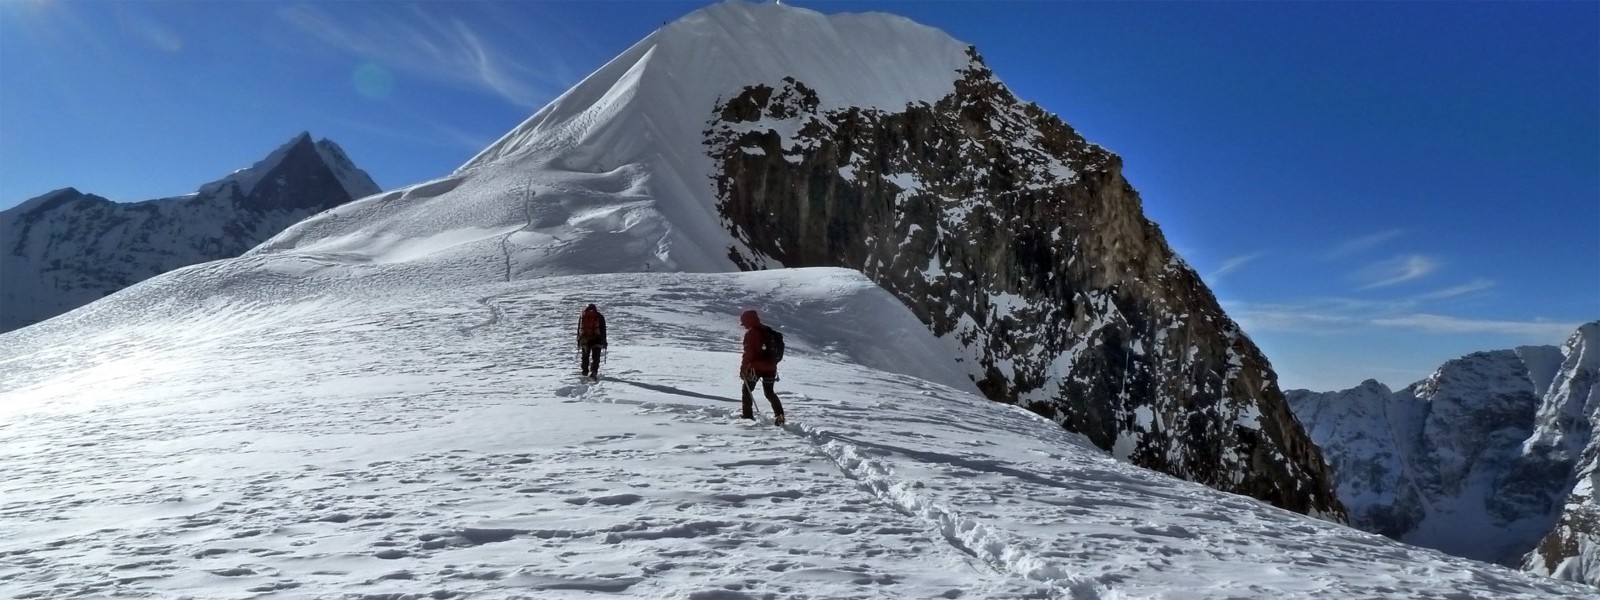 Tharpu Chuli Peak Climb